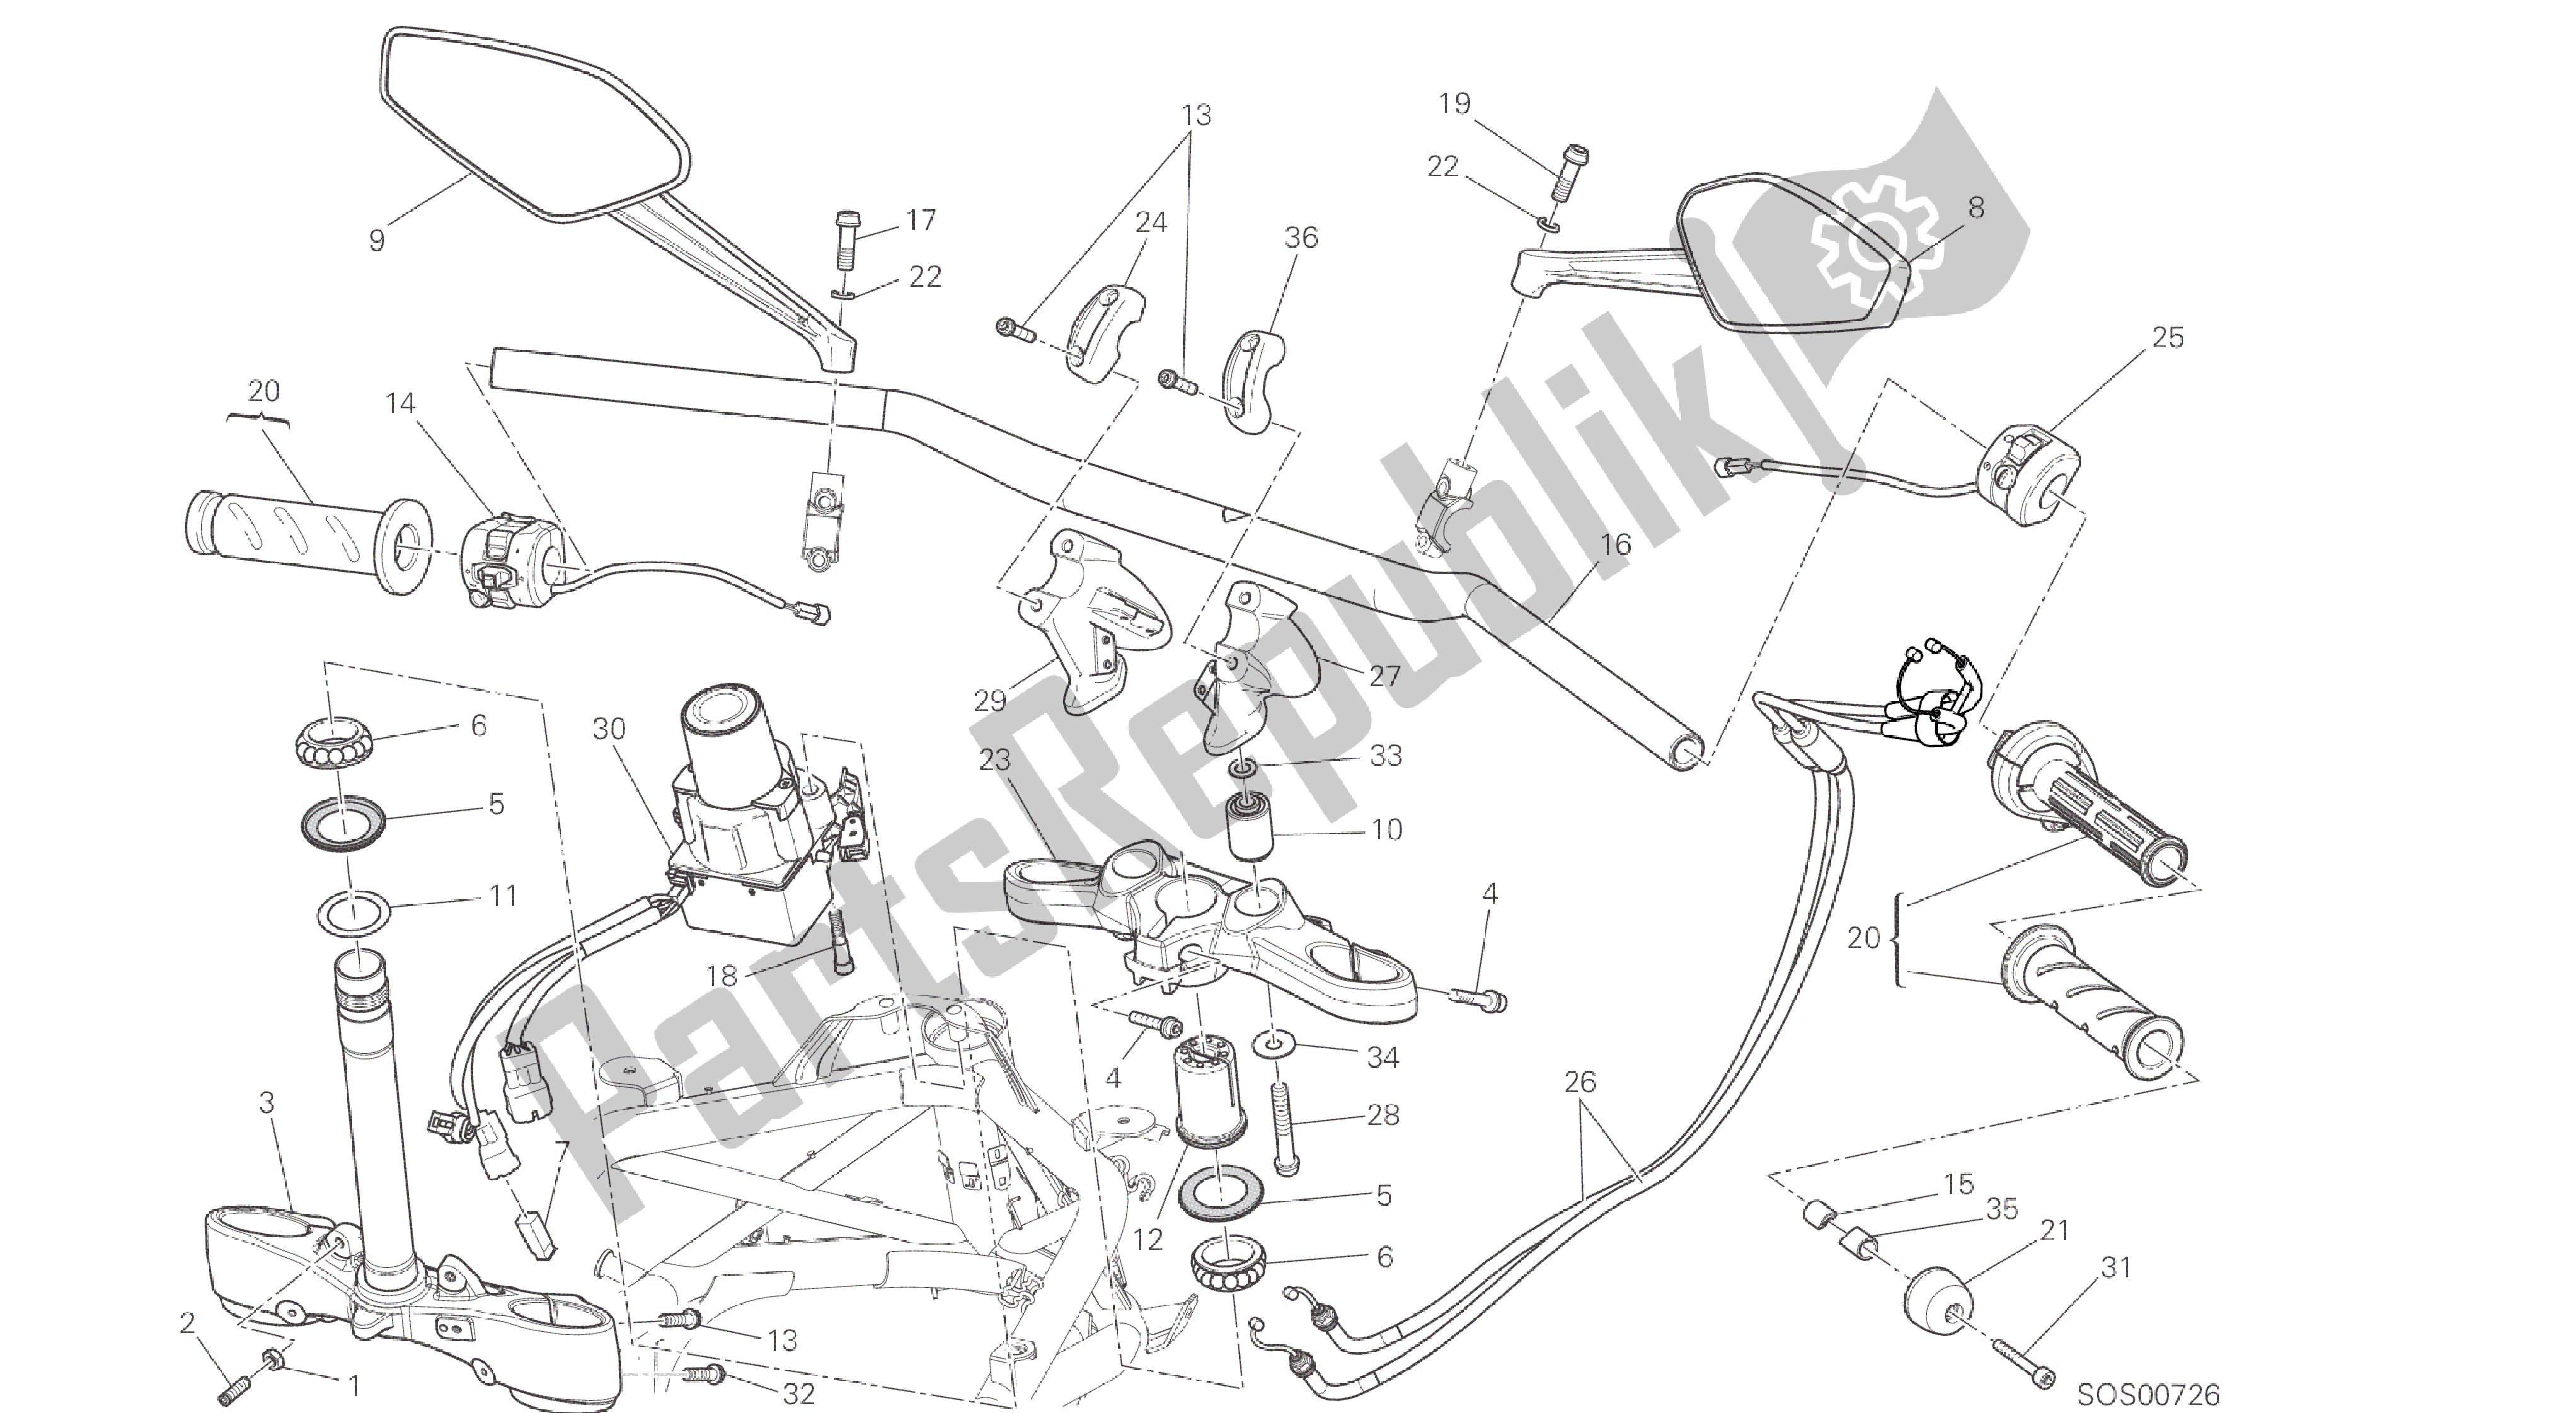 Todas las partes para Dibujo 021 - Marco De Grupo Del Manillar [mod: Dvl] de Ducati Diavel 1200 2016